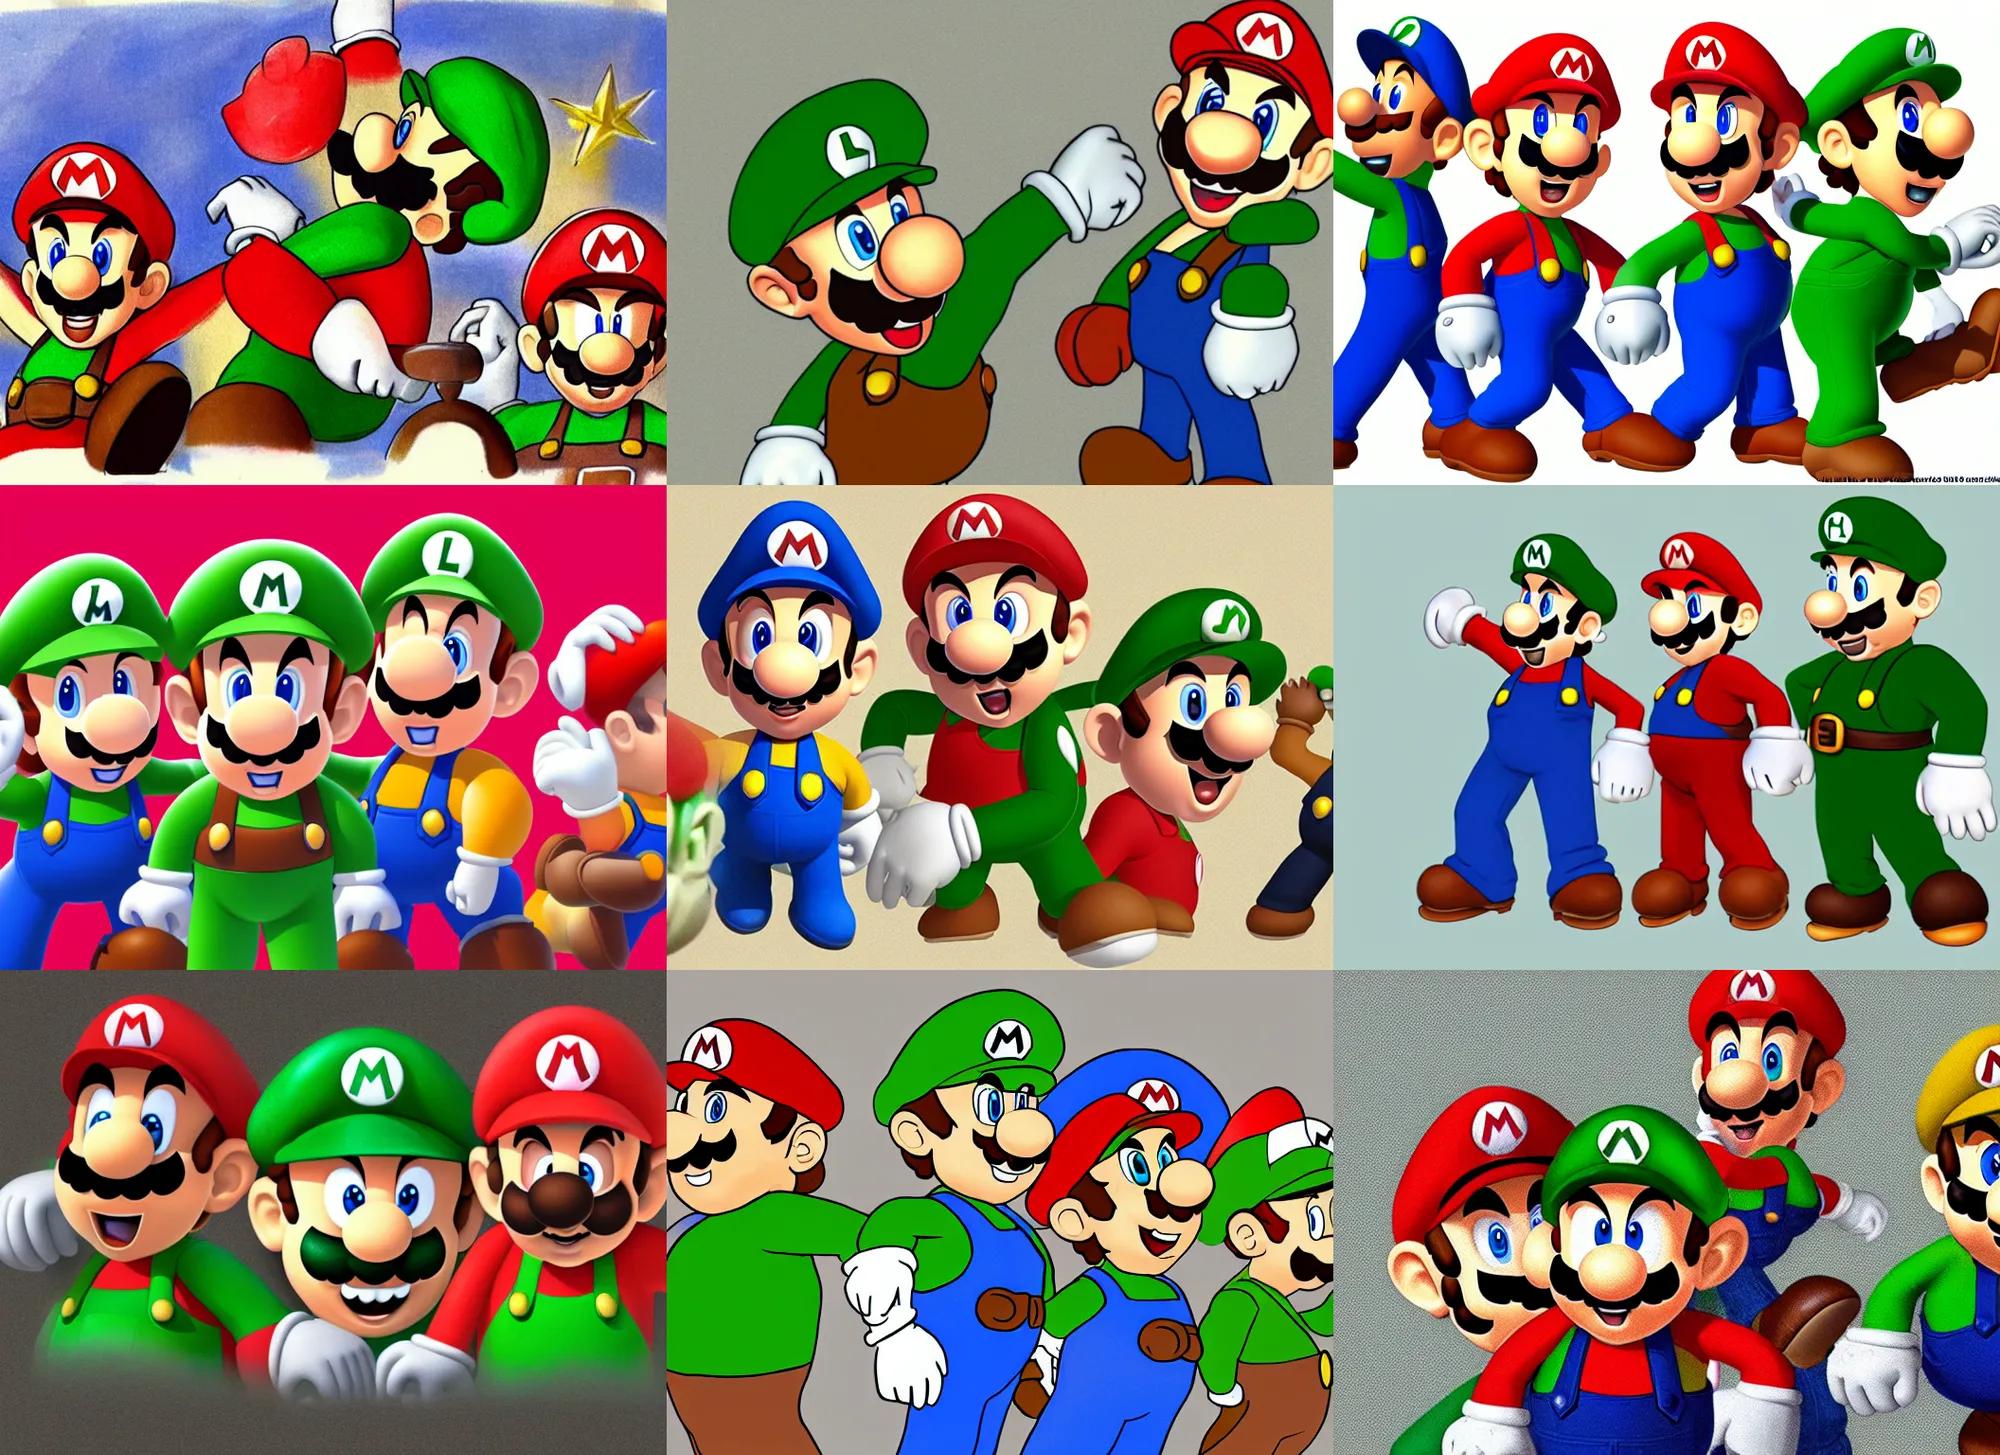 Mario Luigi And Pario Concept Art Stable Diffusion Openart